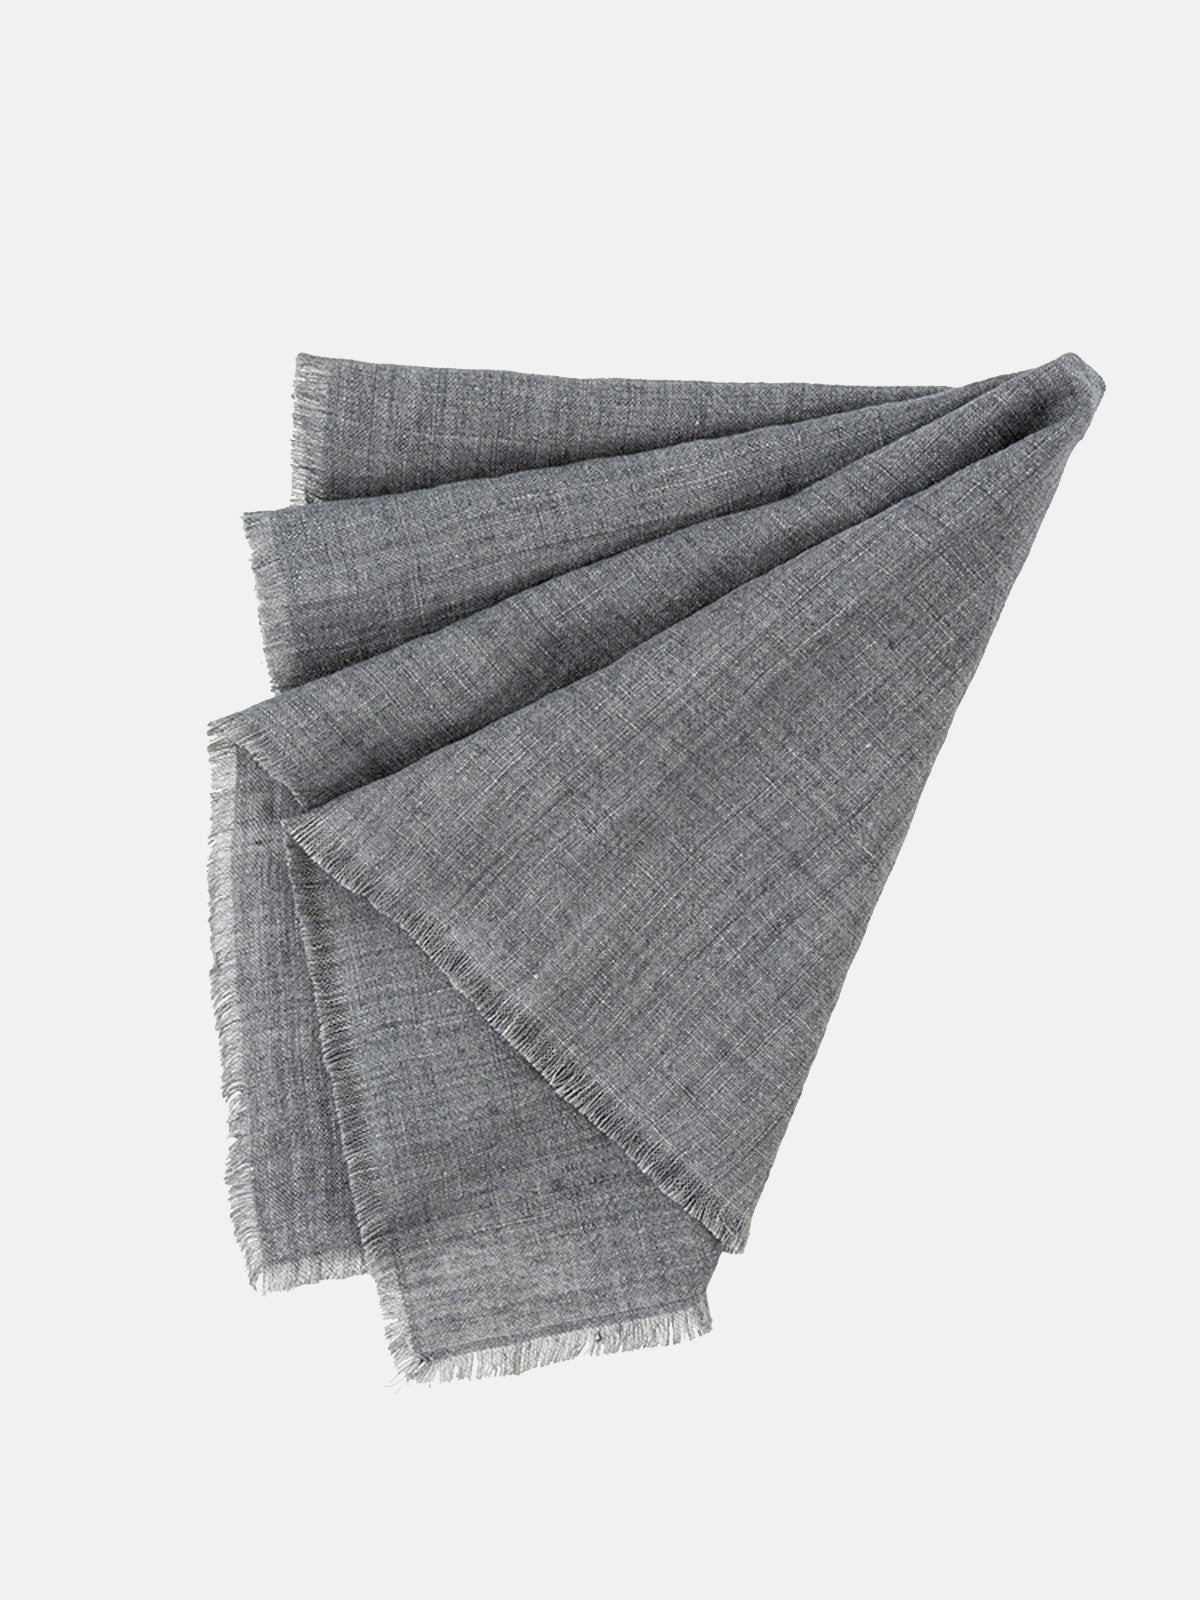 Steel Grey Linen Napkin, Set of 4